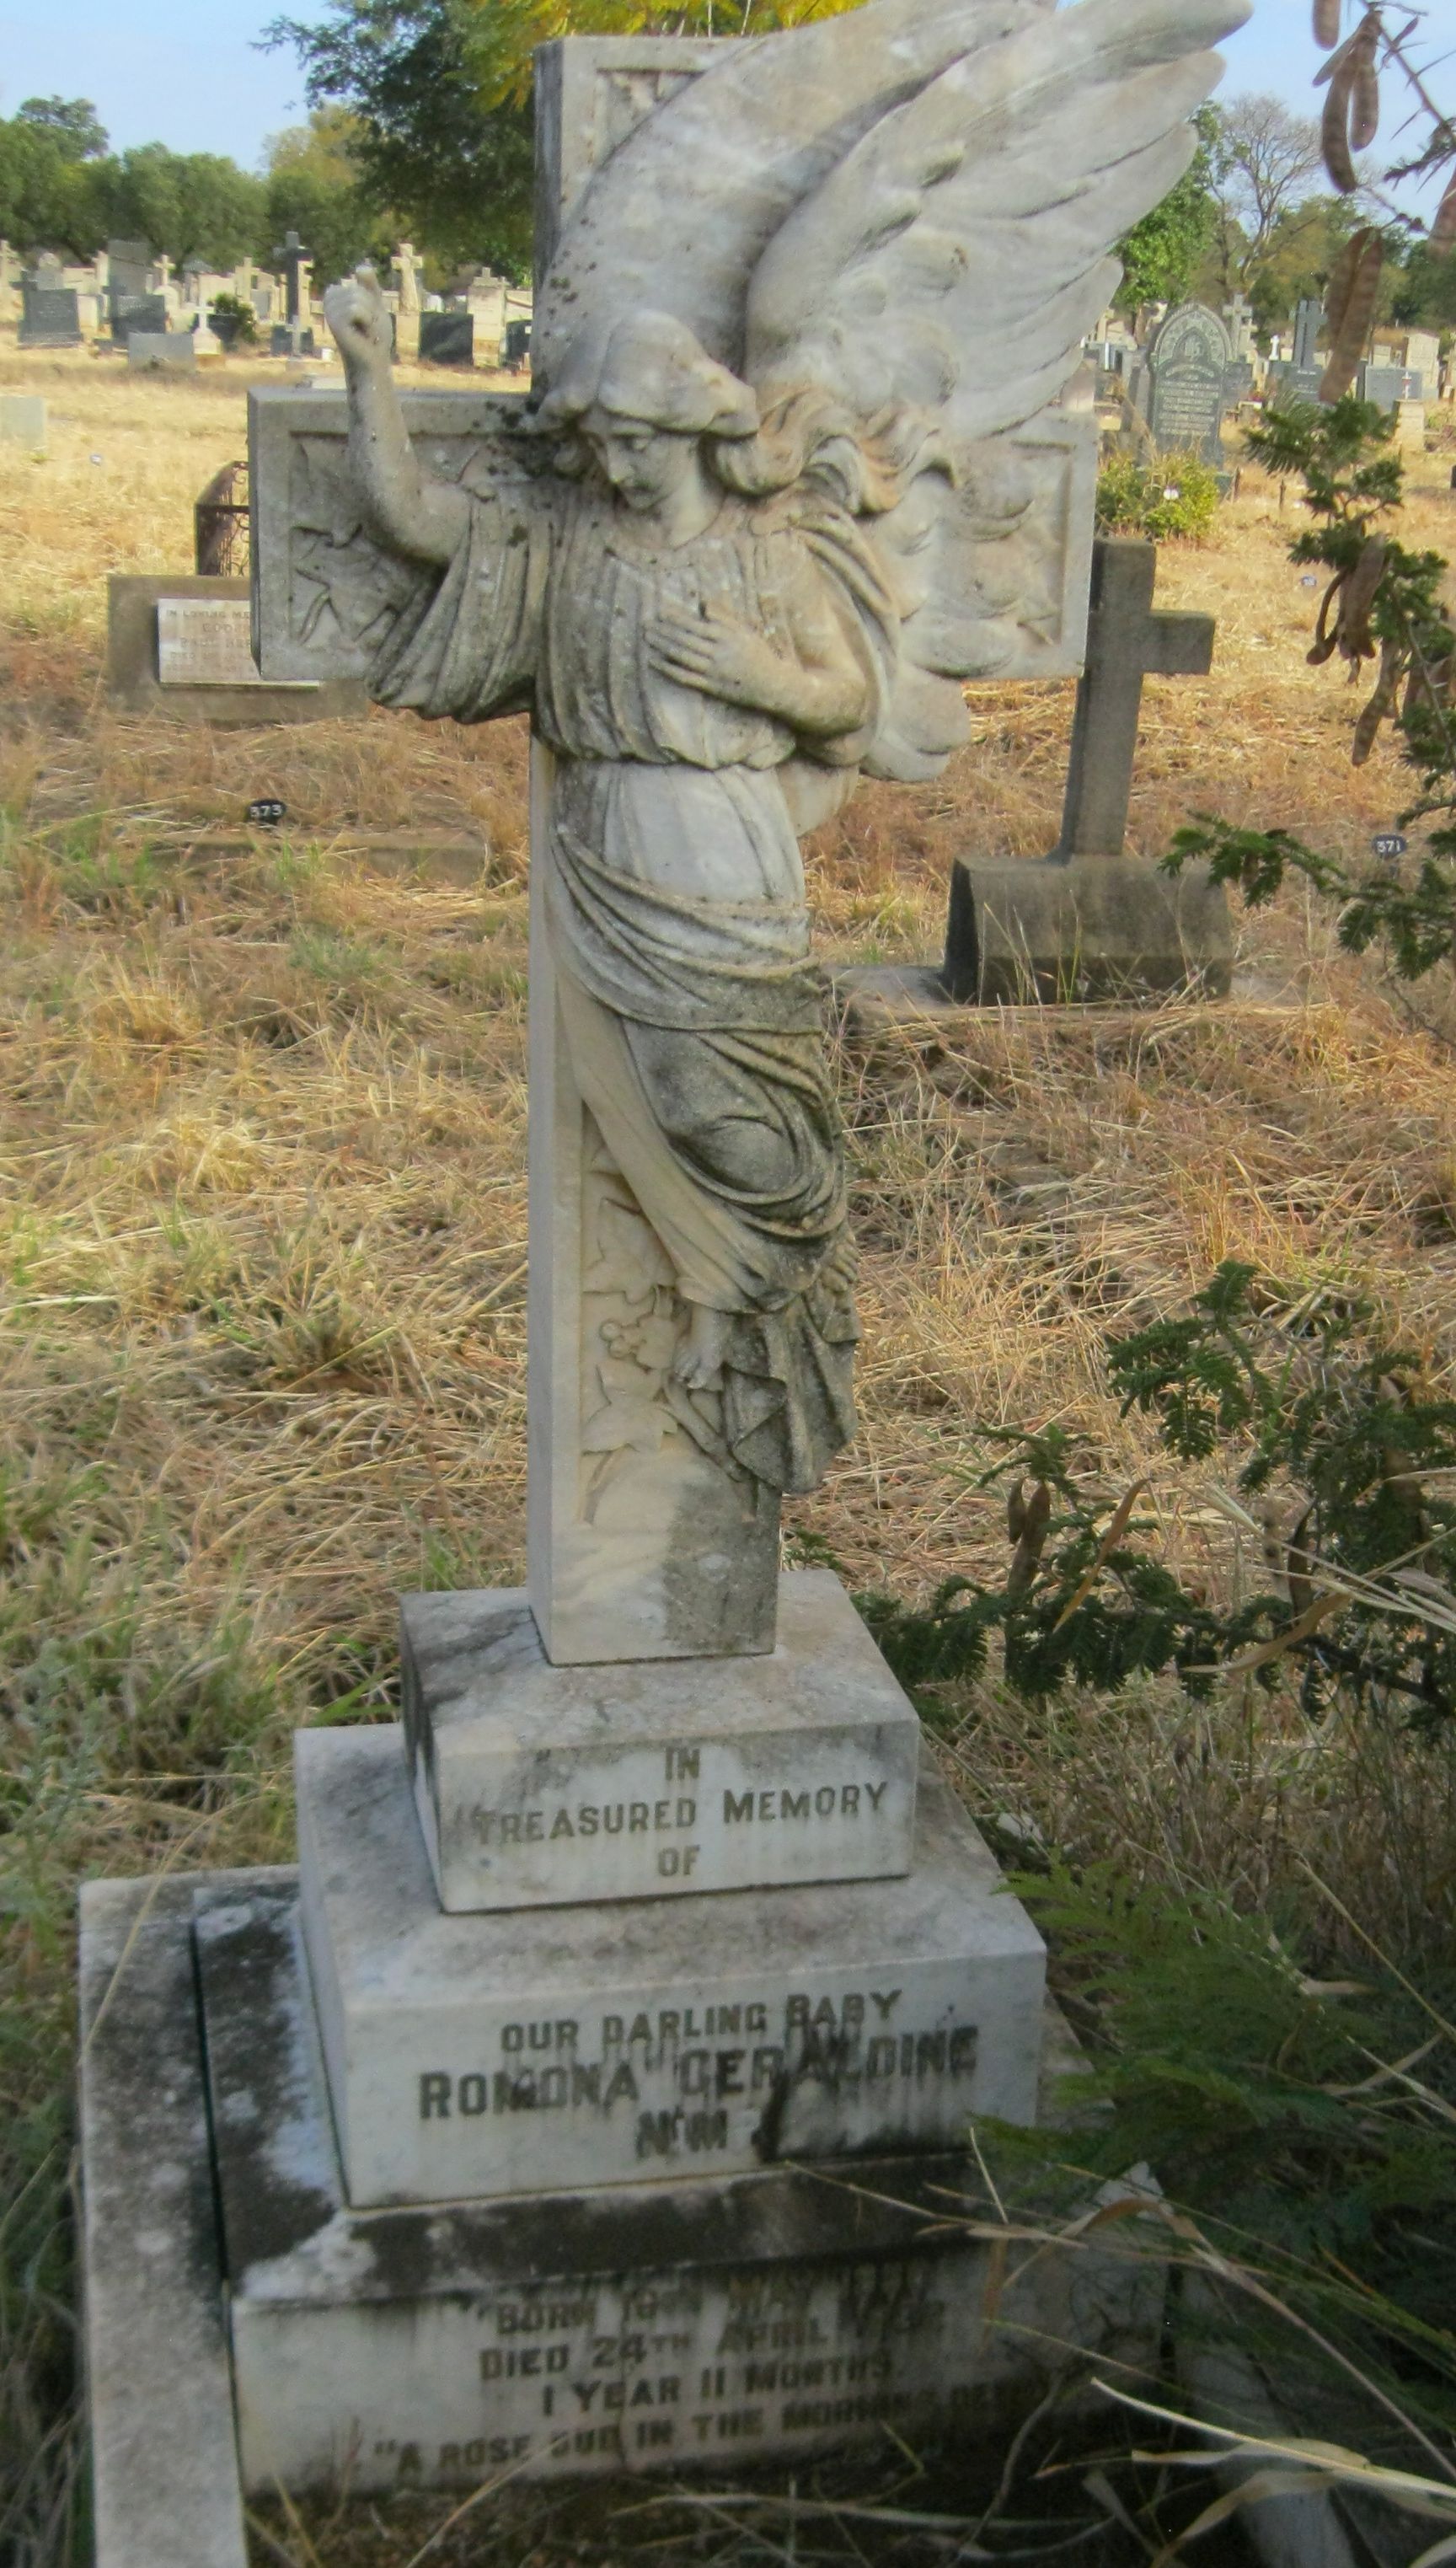 cemeteries_headstone_byo_nimr_1932